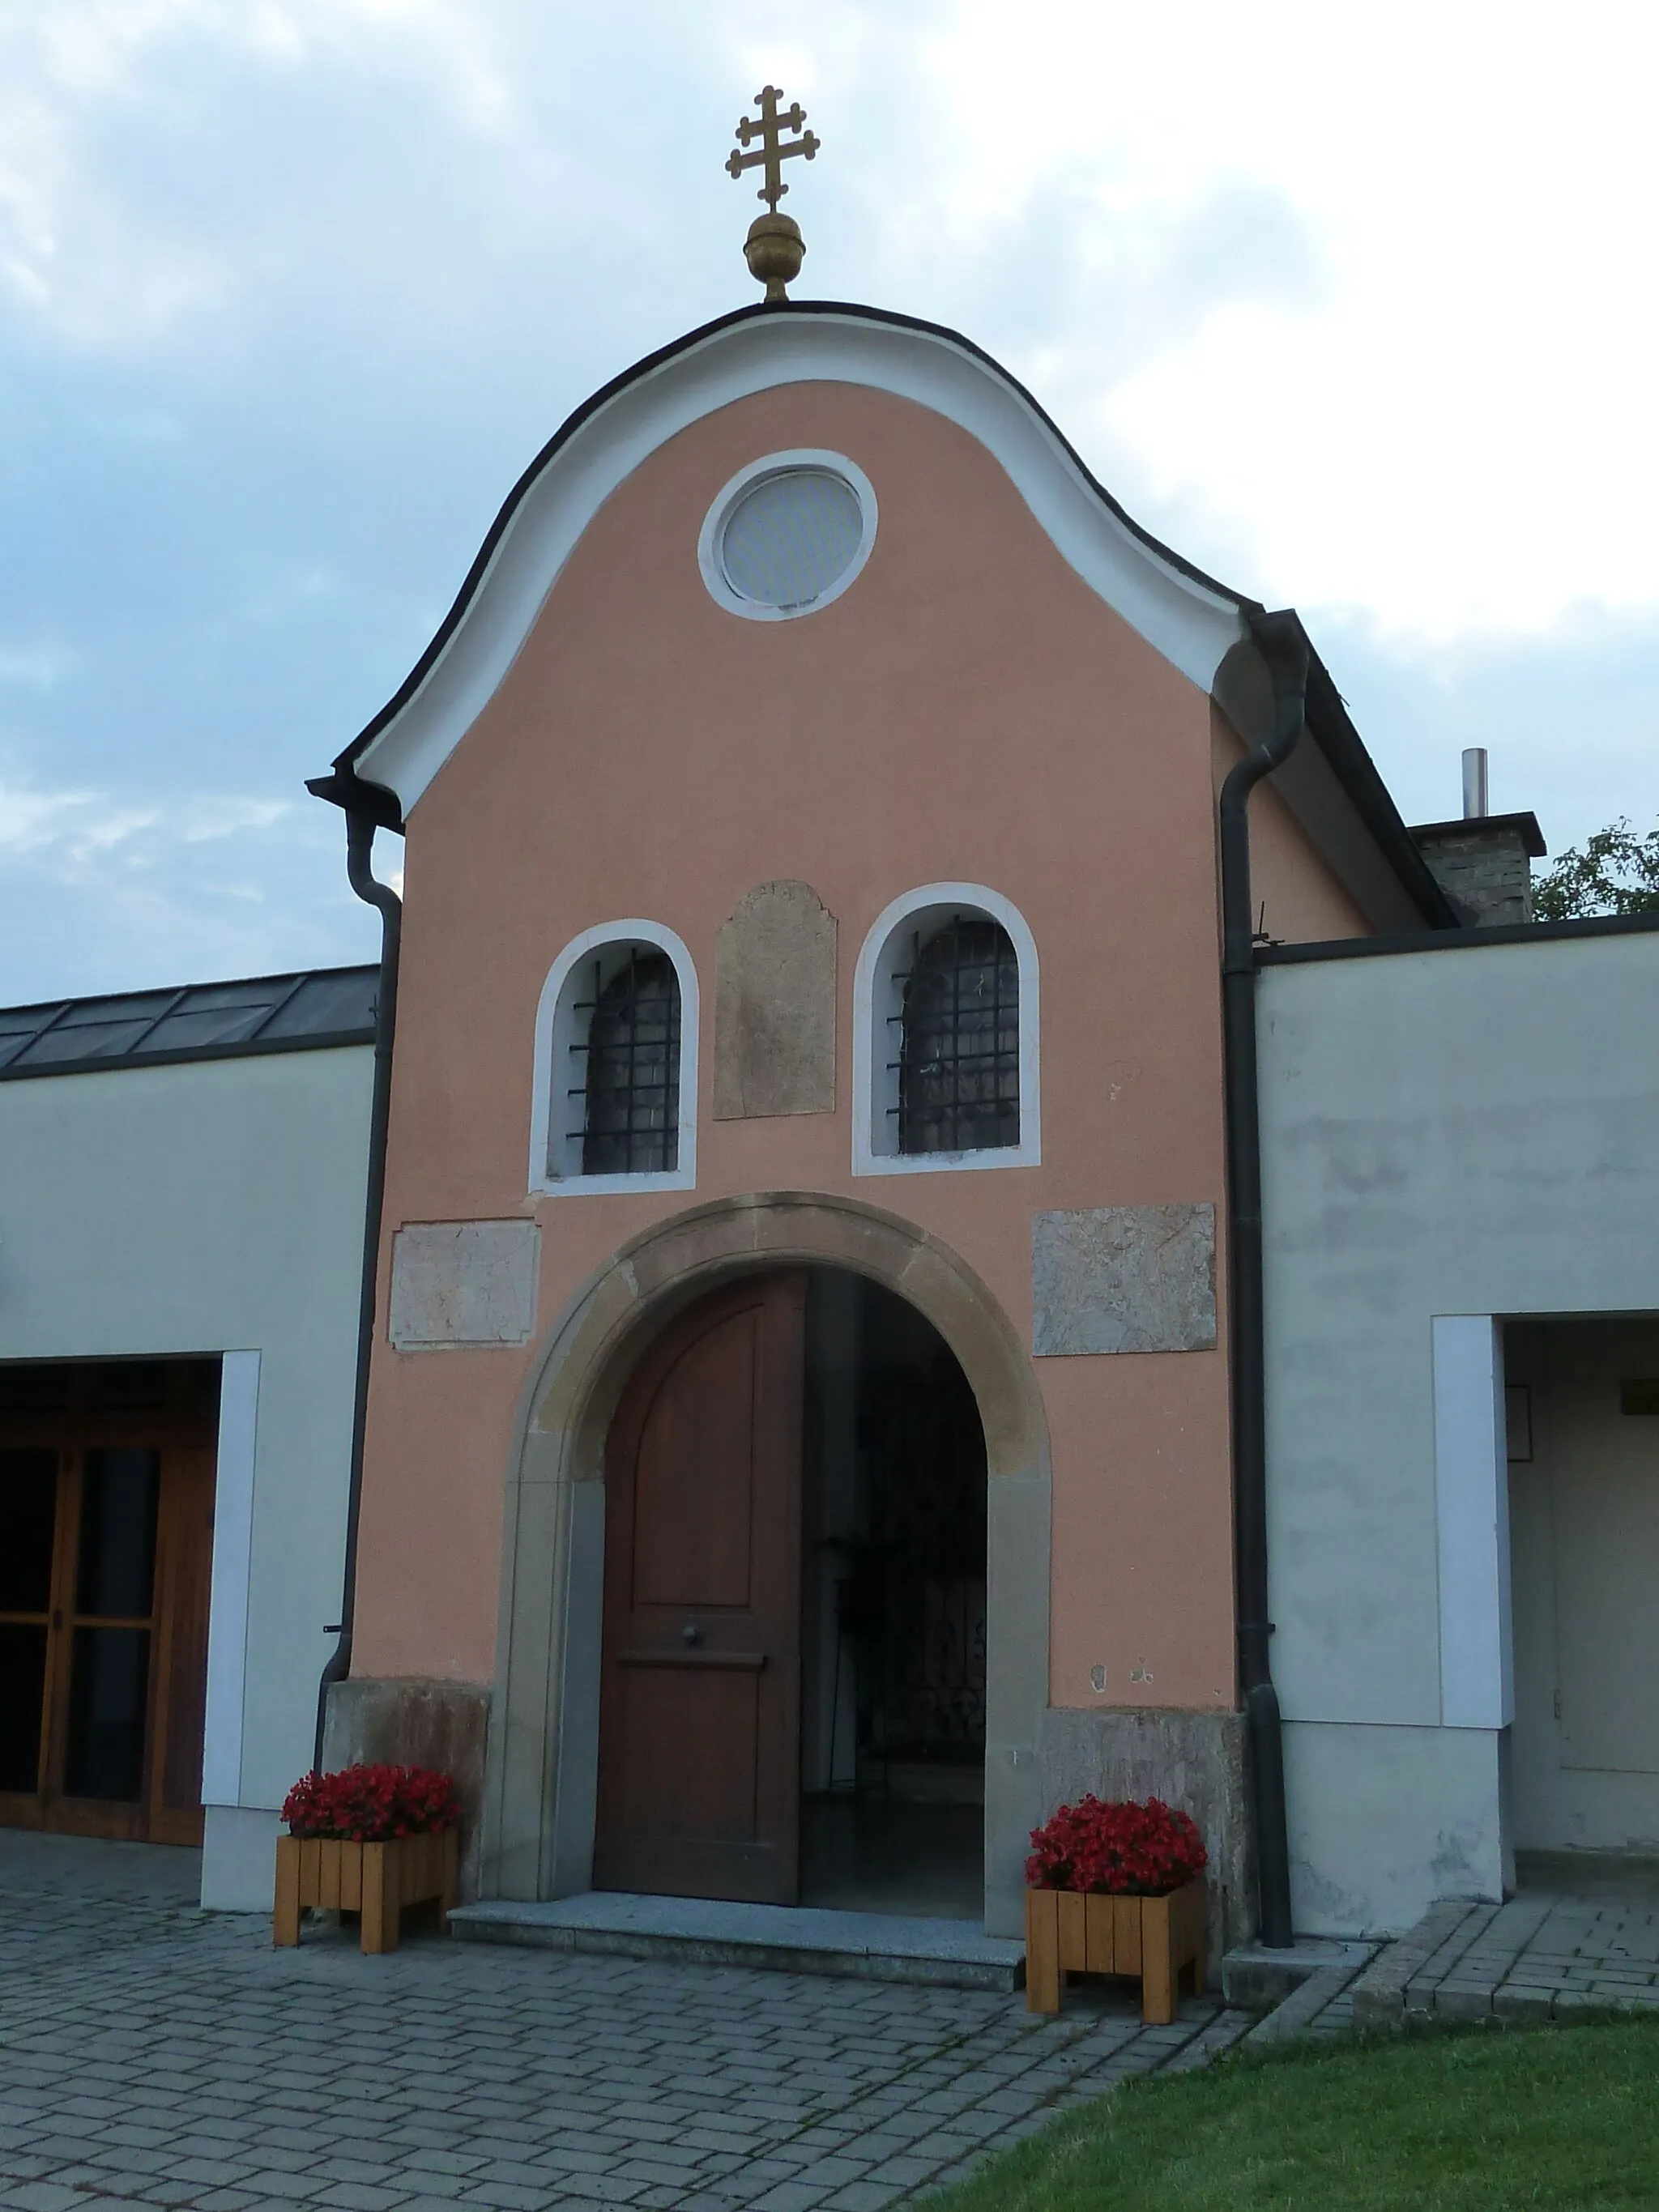 Photo showing: Kapelle Zur Schmerzhaften Mutter, Aussenansicht
Kirchplatz St.Georgen an der Stiefing, Austria